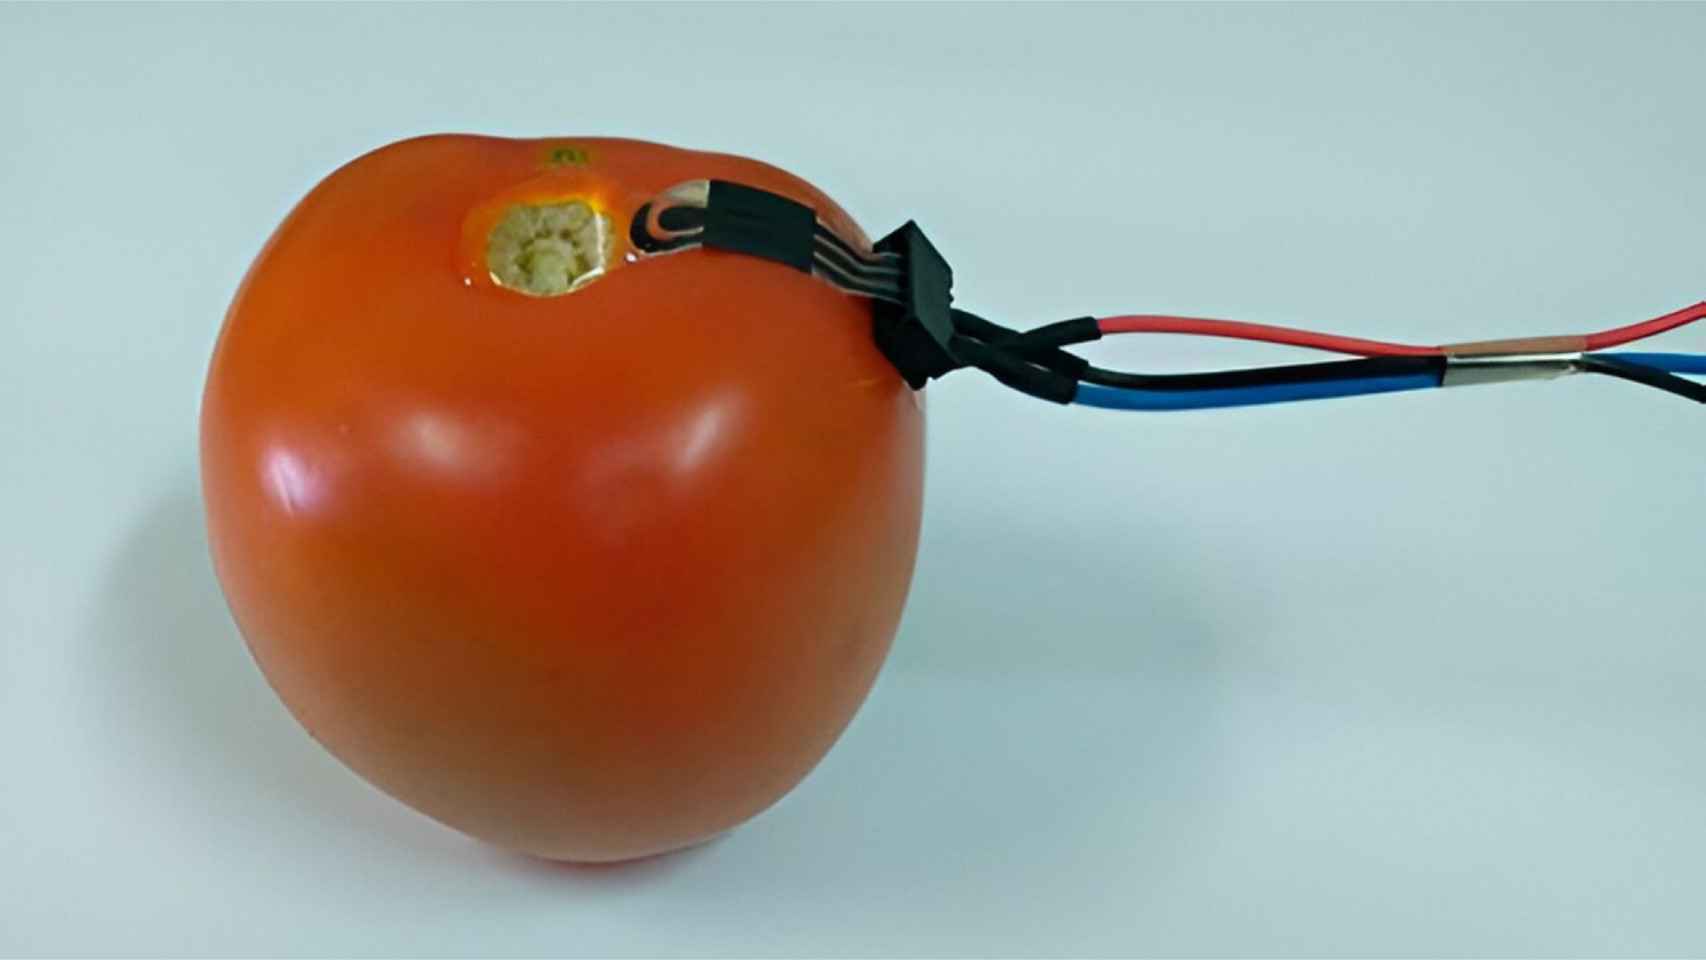 Un tomate con el sensor biodegradable y los electrodos conectados